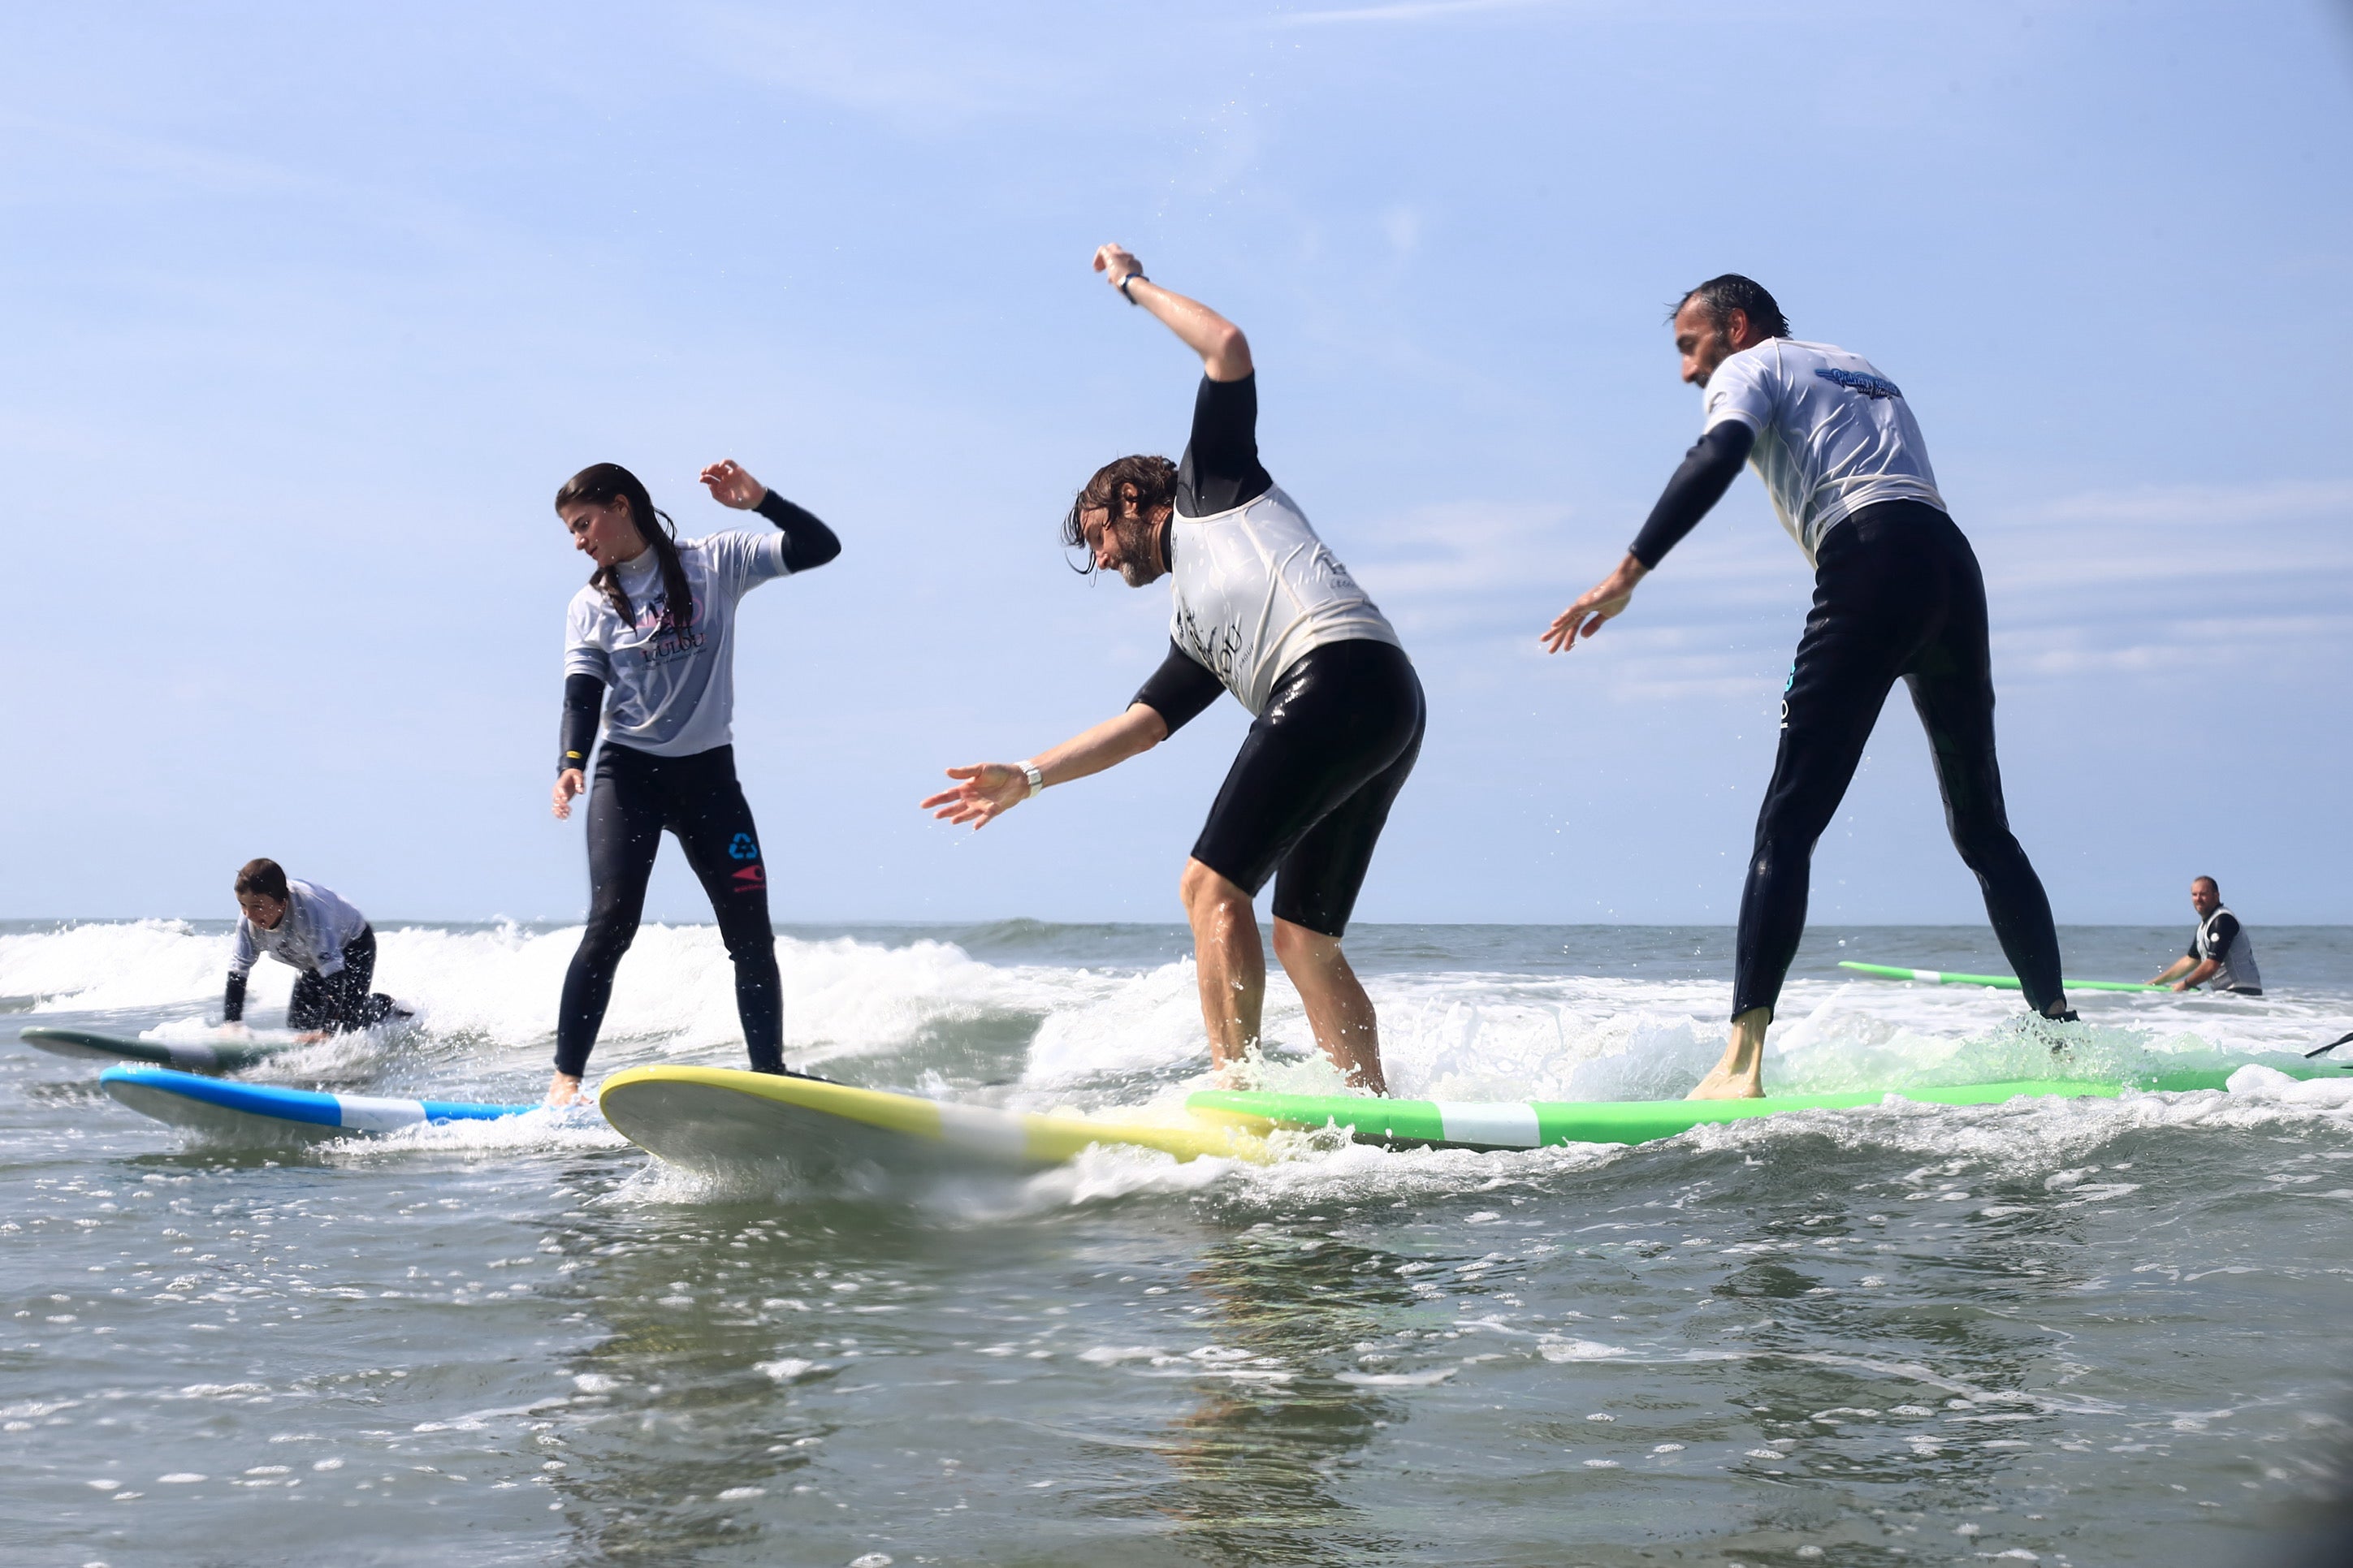 Surfers débutants pendant un cour de surf en france en train de prendre une vague pendant un cours de Surf en France sur des planches de surf en mousse des marques zeus et softech.